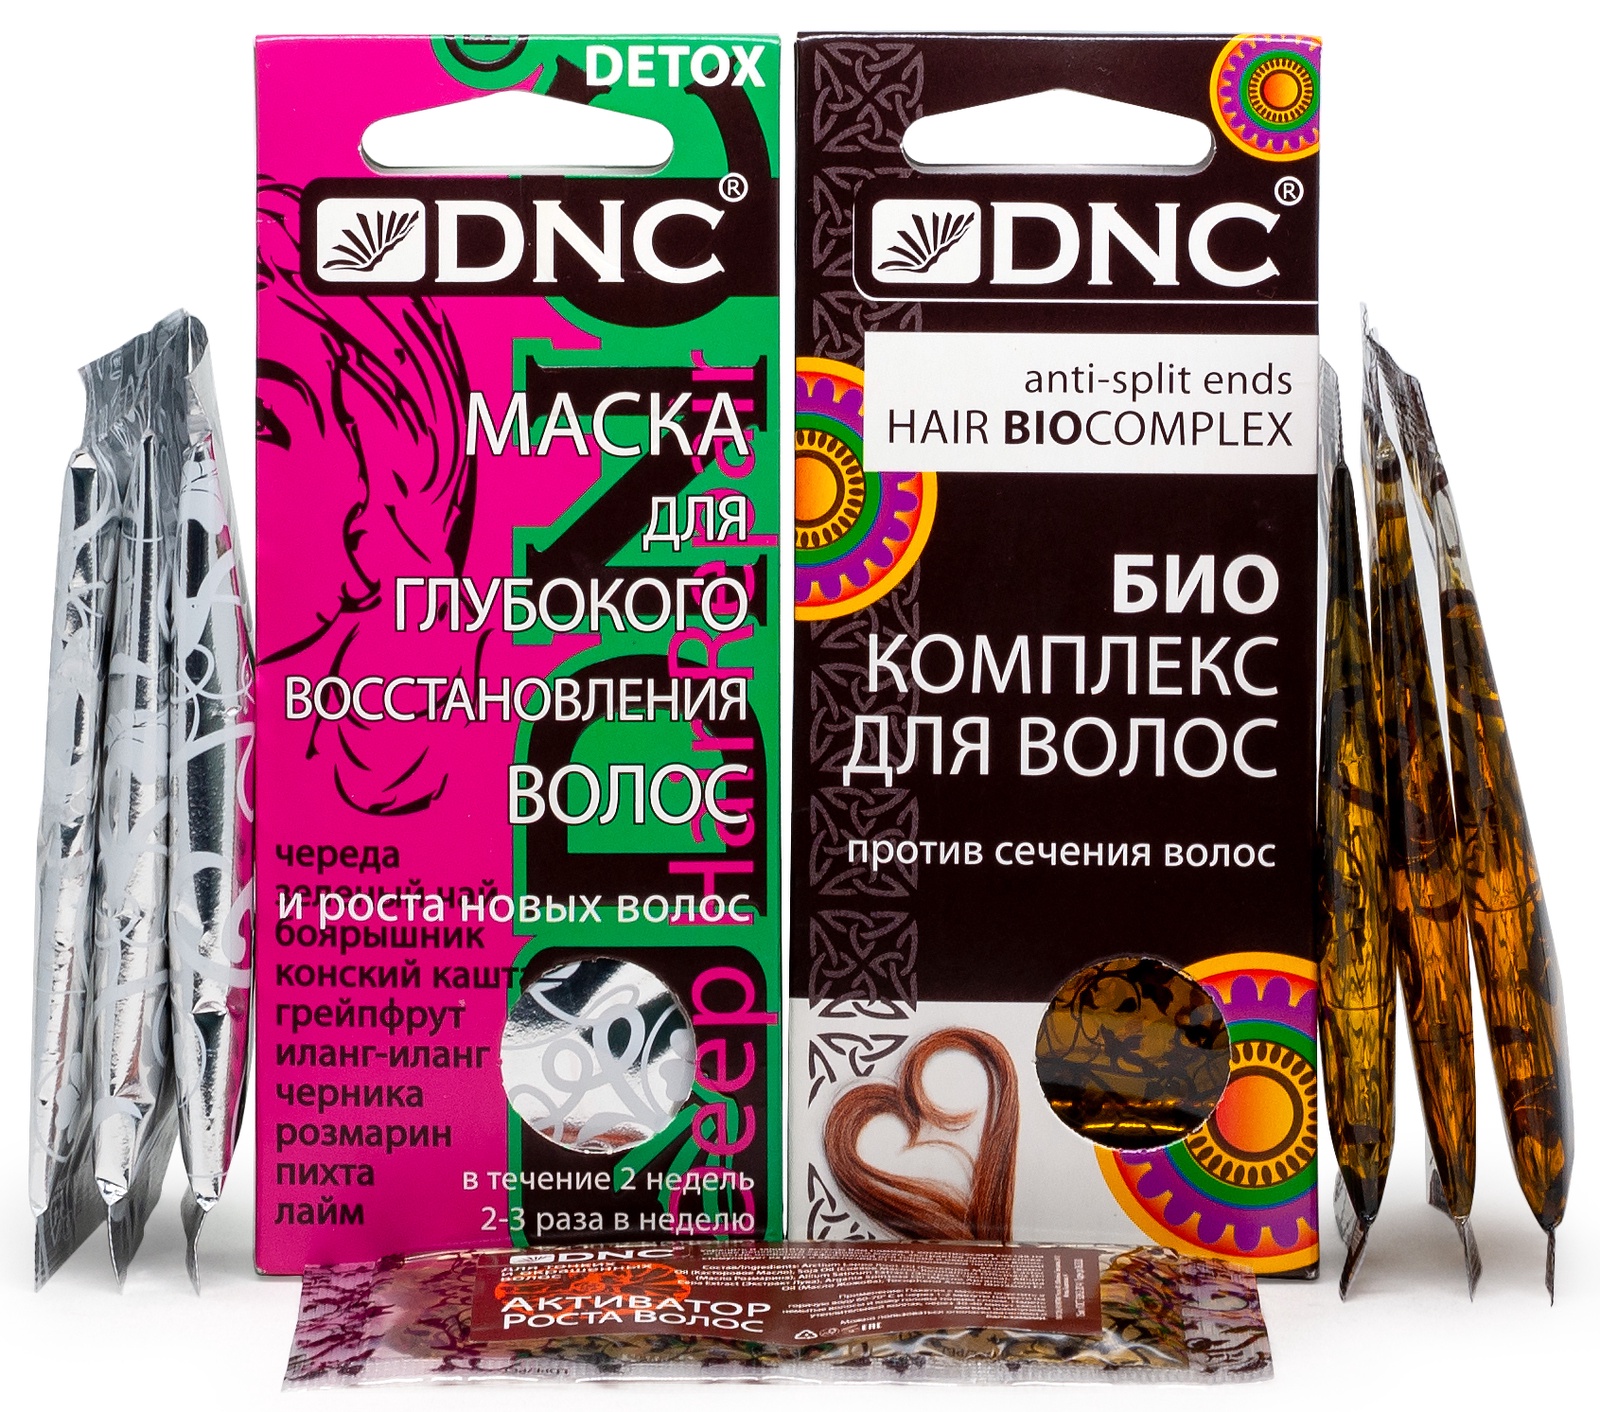 Биокомплекс для волос DNC против сечения волос. DNC маска для роста волос. Против сечения. Питание против сечения волос.